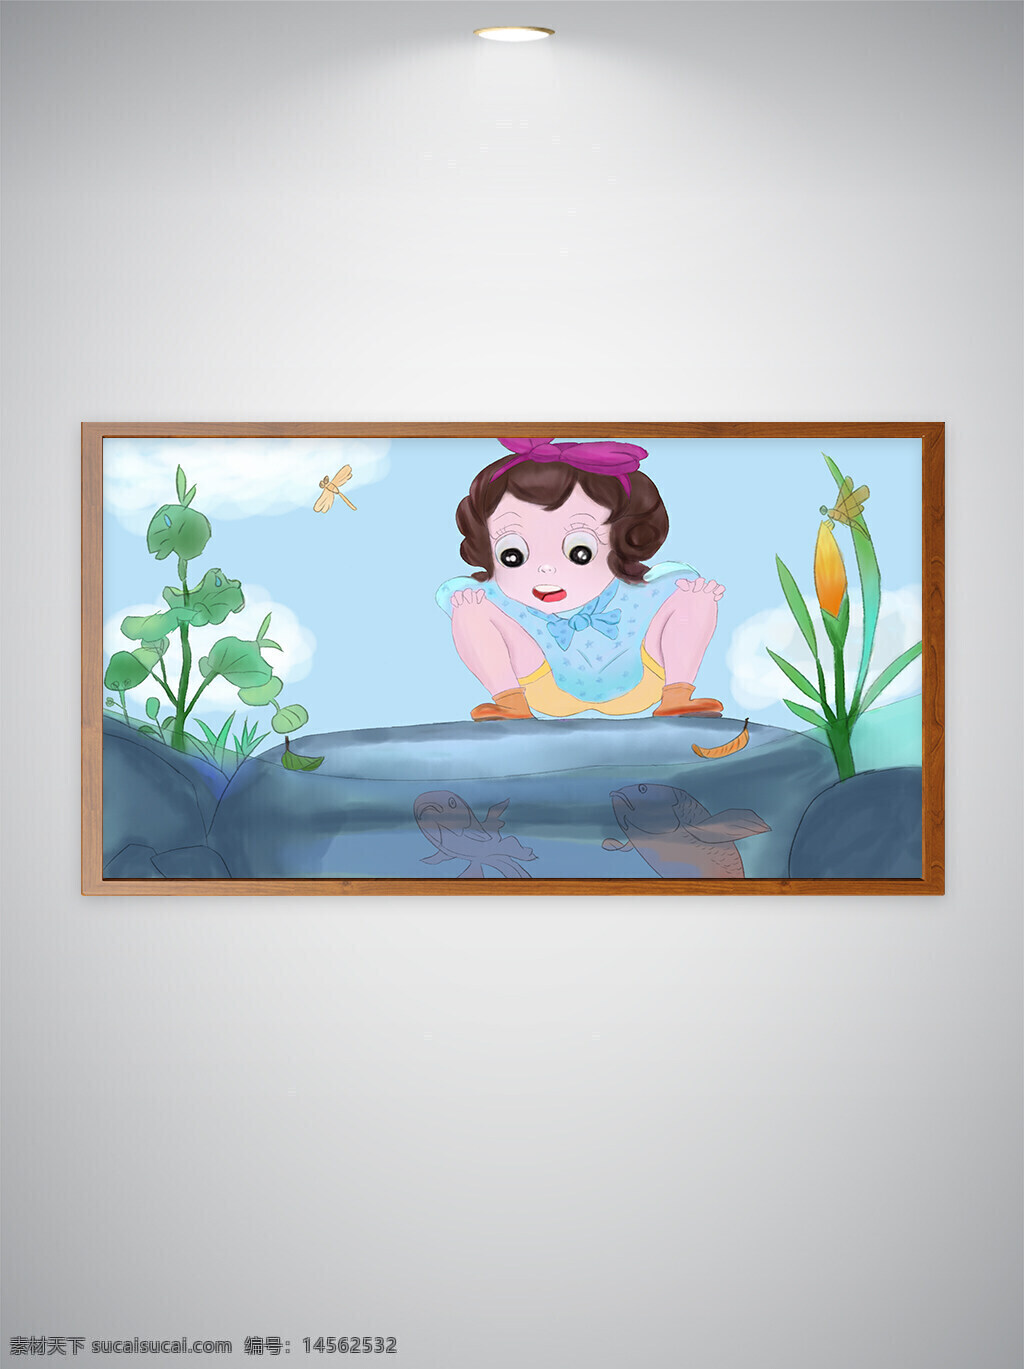 看鱼的女孩 卡通女孩 手绘金鱼 手绘植物 植物 金鱼 小女孩 蹲着的小女孩 池塘 石头